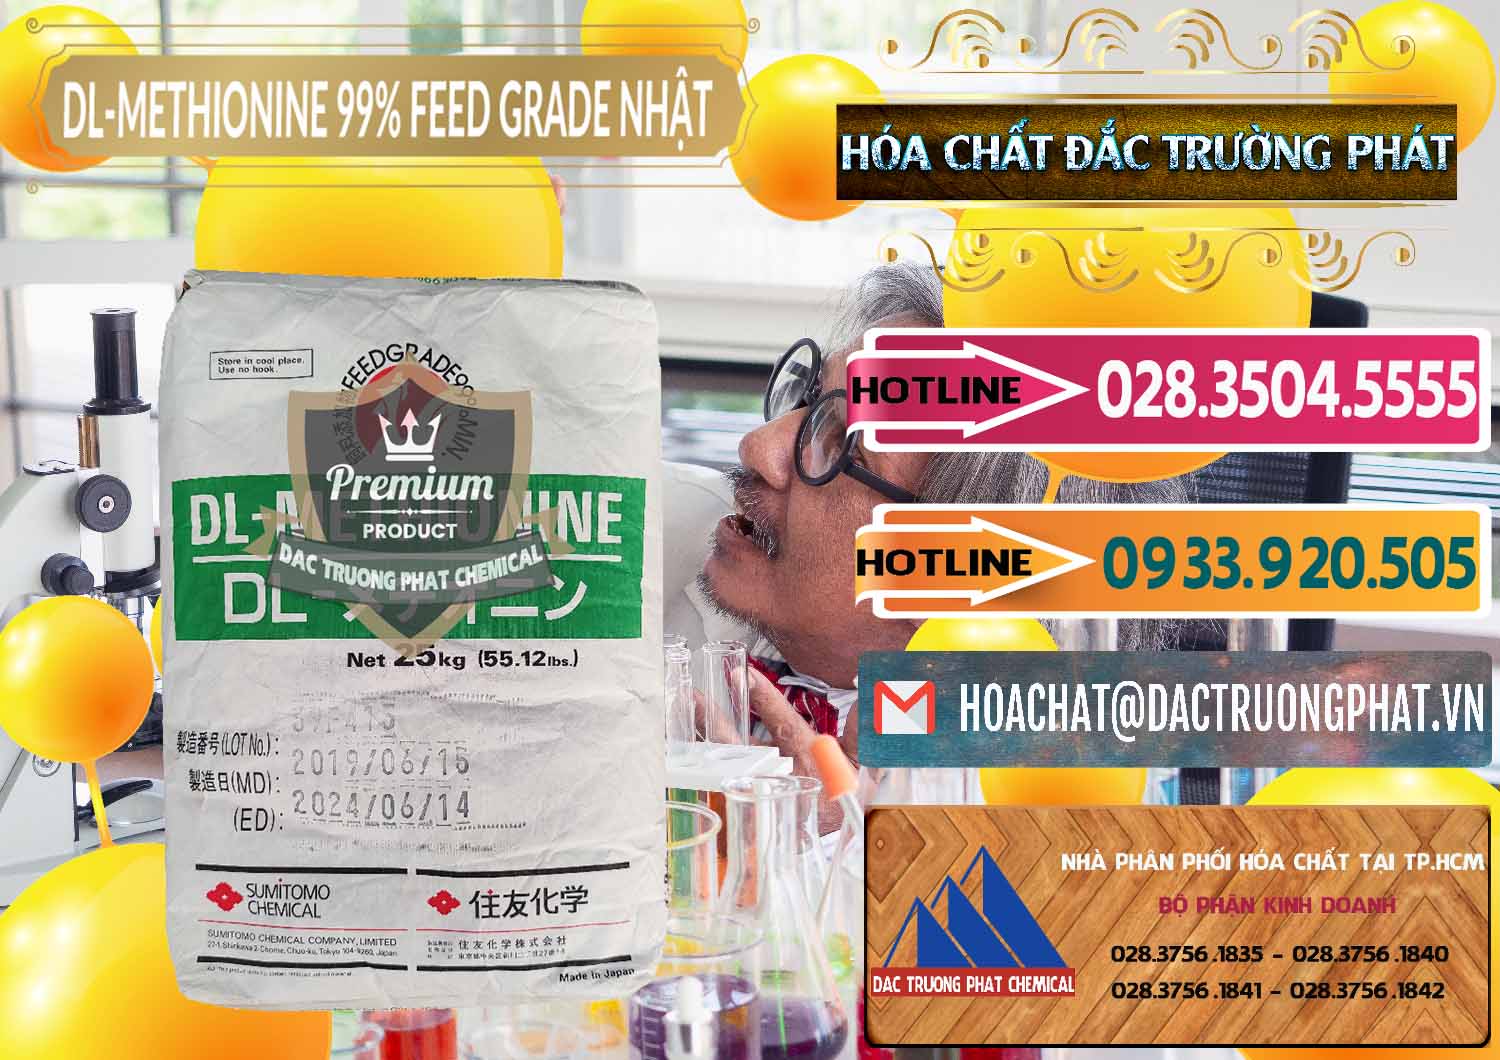 Nơi chuyên bán & phân phối DL-Methionine - C5H11NO2S Feed Grade Sumitomo Nhật Bản Japan - 0313 - Chuyên kinh doanh ( phân phối ) hóa chất tại TP.HCM - dactruongphat.vn